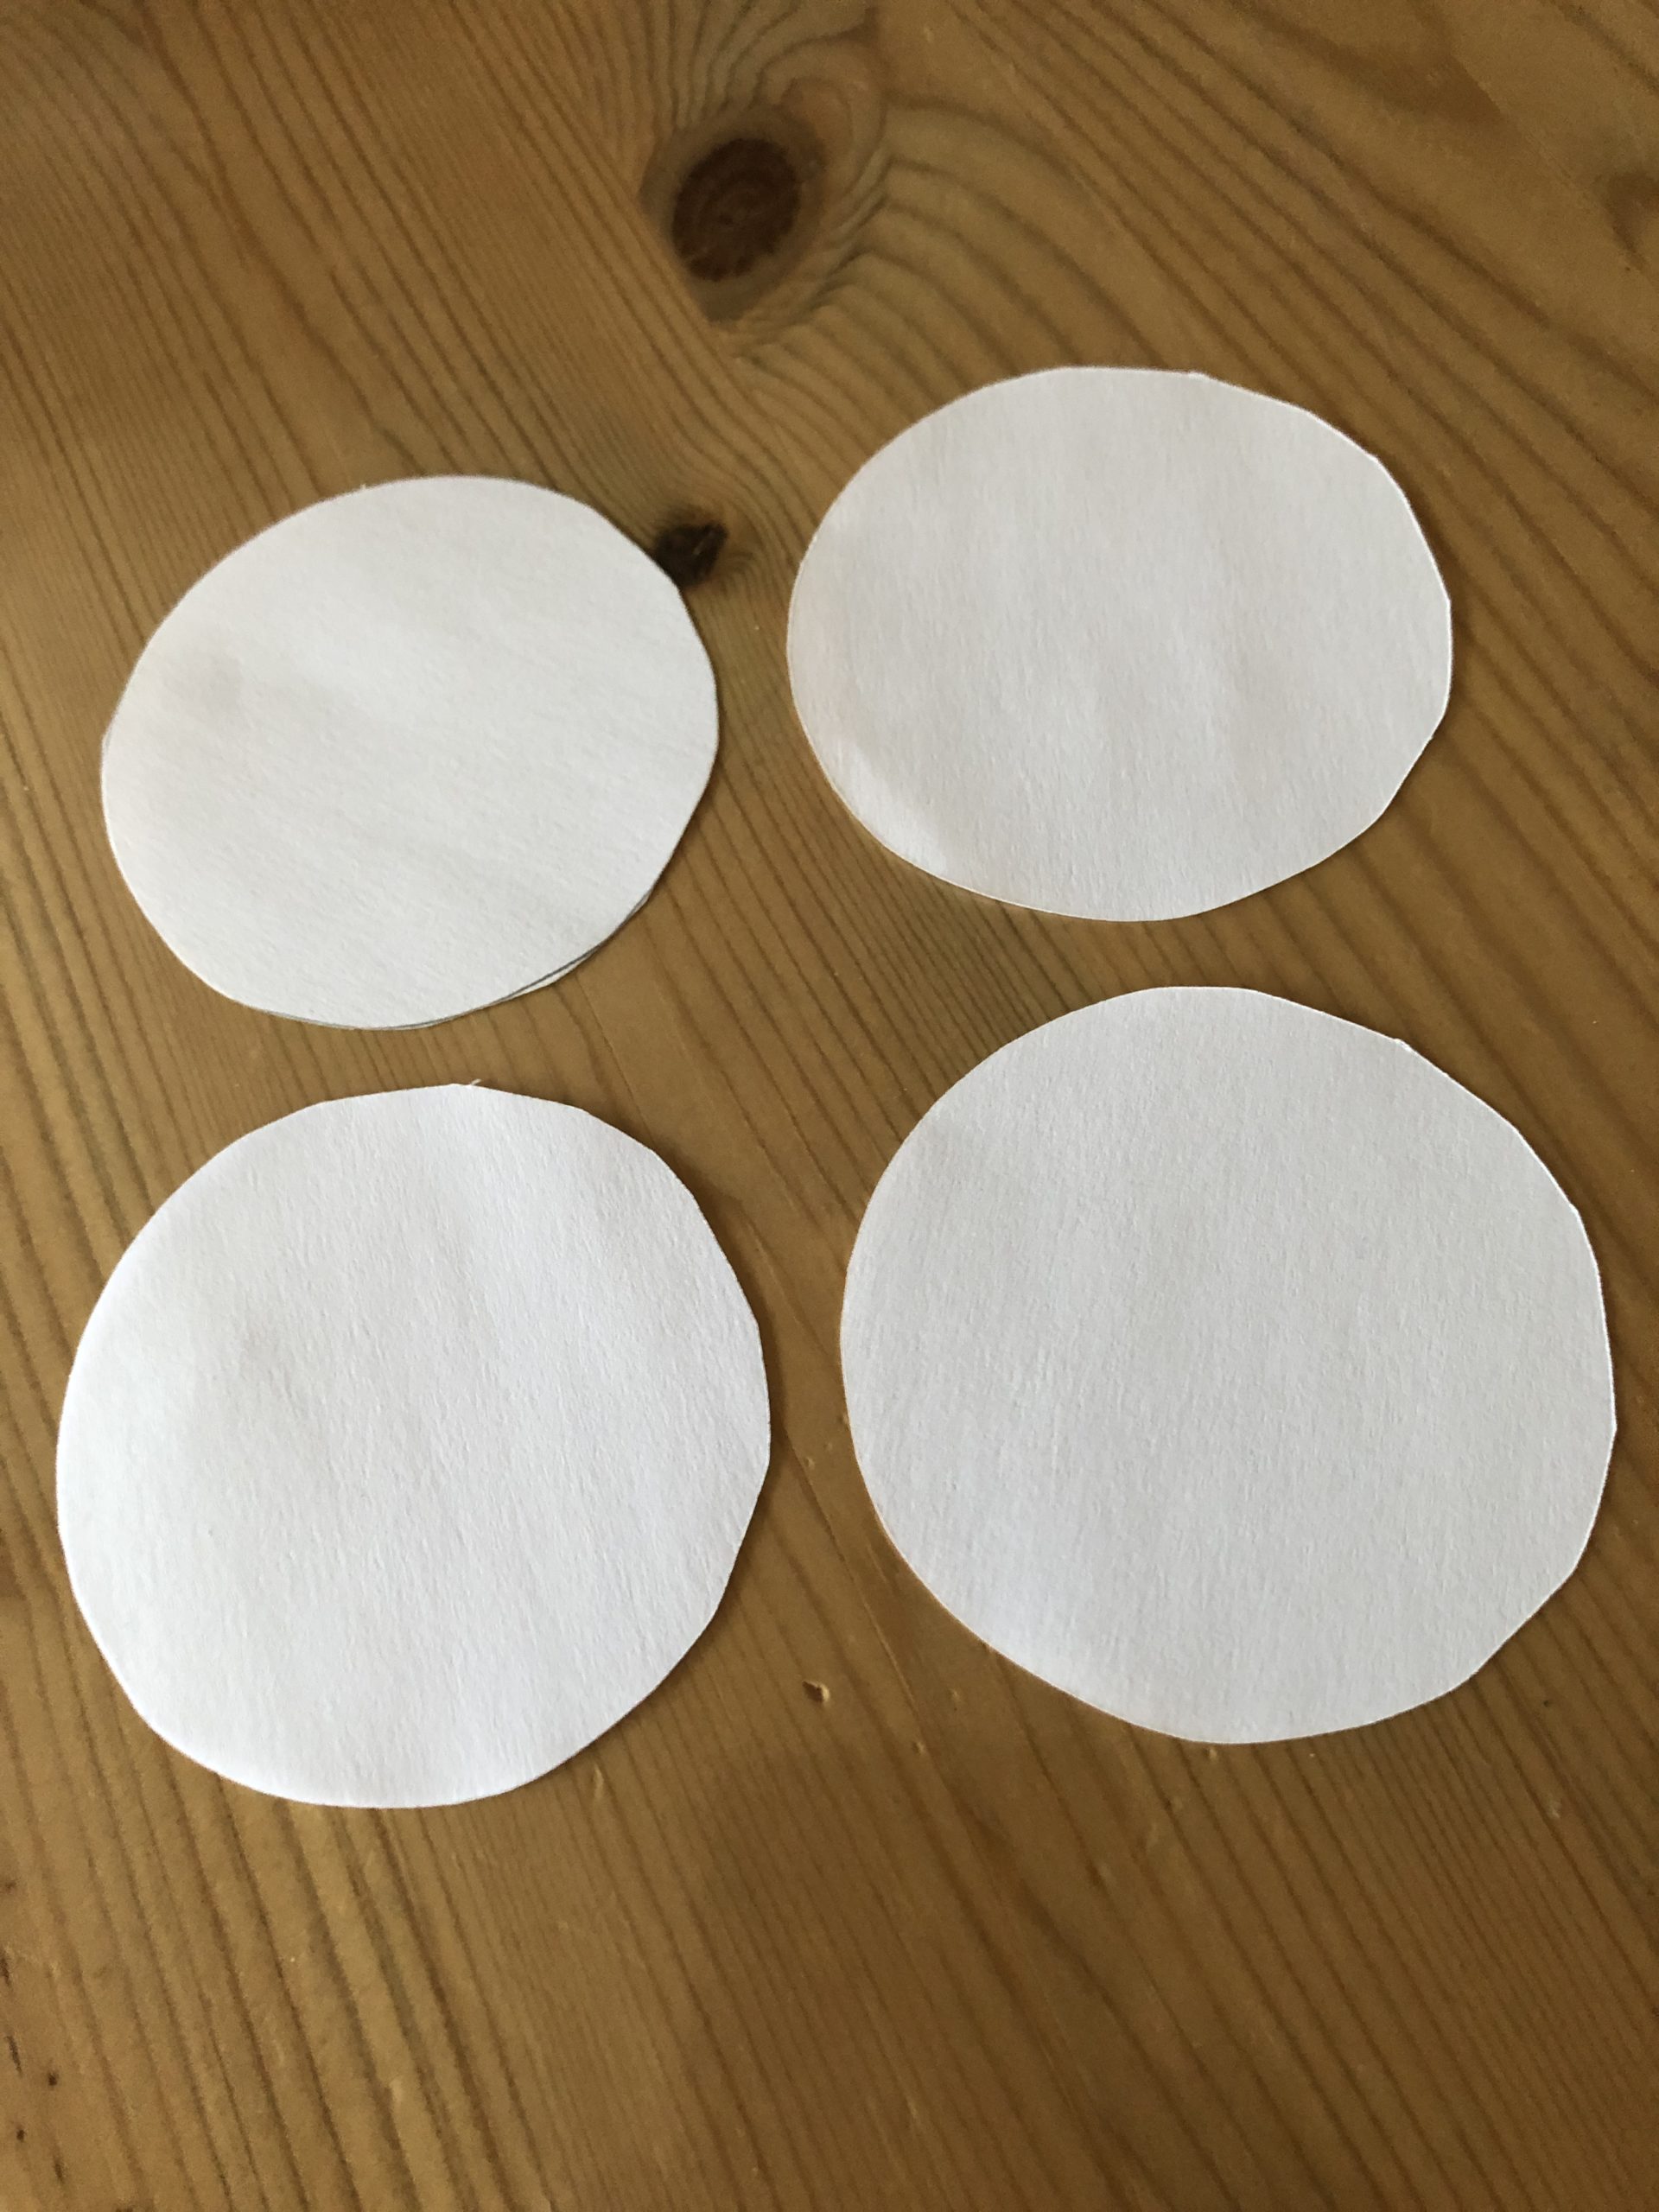 Bild zum Schritt 3 für die Kinder-Beschäftigung: 'Dann malt vier Kreise auf und schneidet diese aus. Verwendet...'